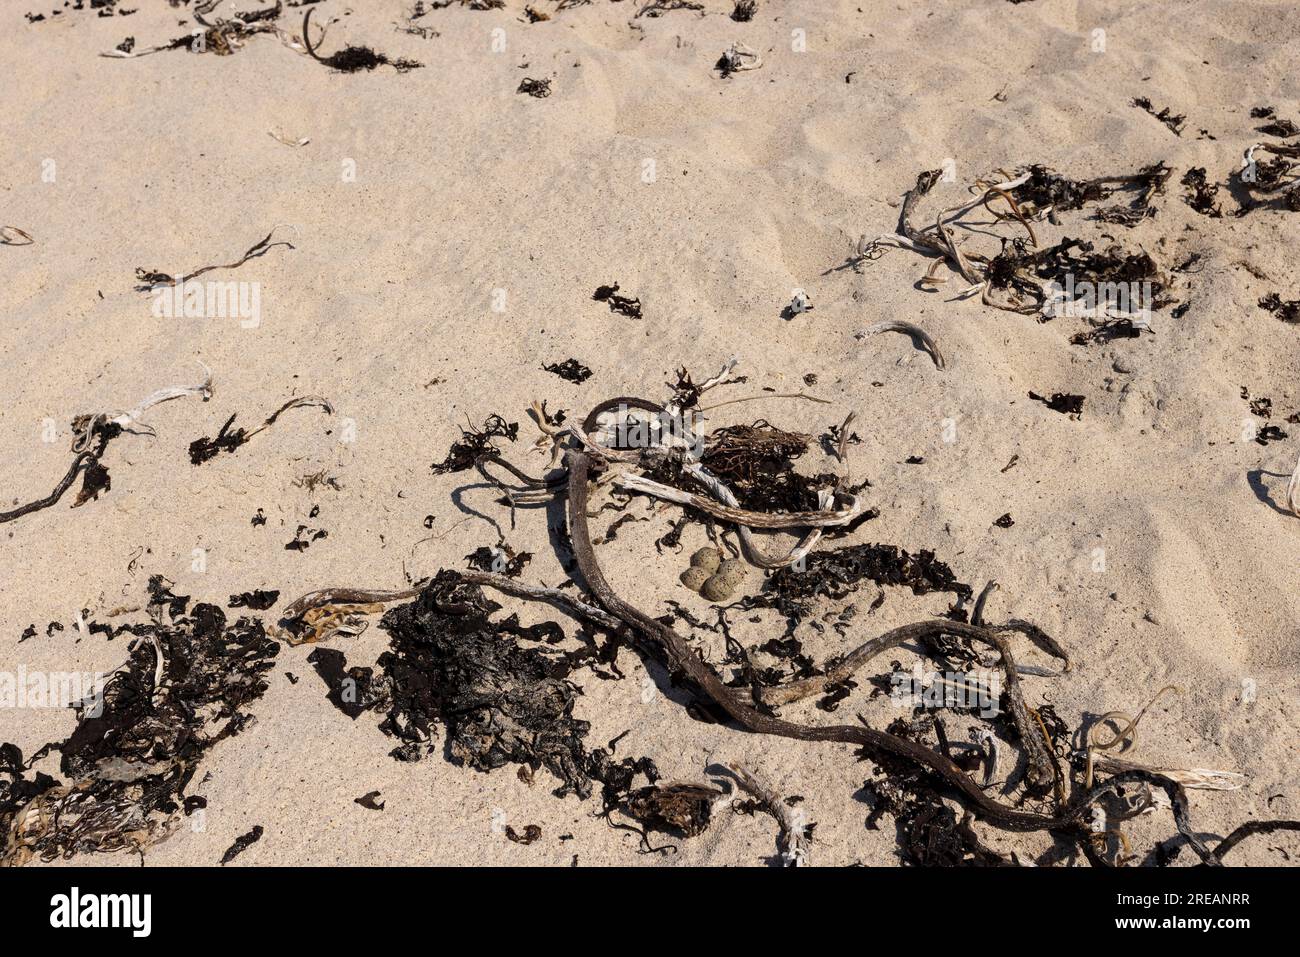 Tremplin commun à anneaux Charadrius hiaticula, nid avec quatre œufs sur une plage de sable, Iona, Argyll & Bute, Écosse, Royaume-Uni, Juin Banque D'Images